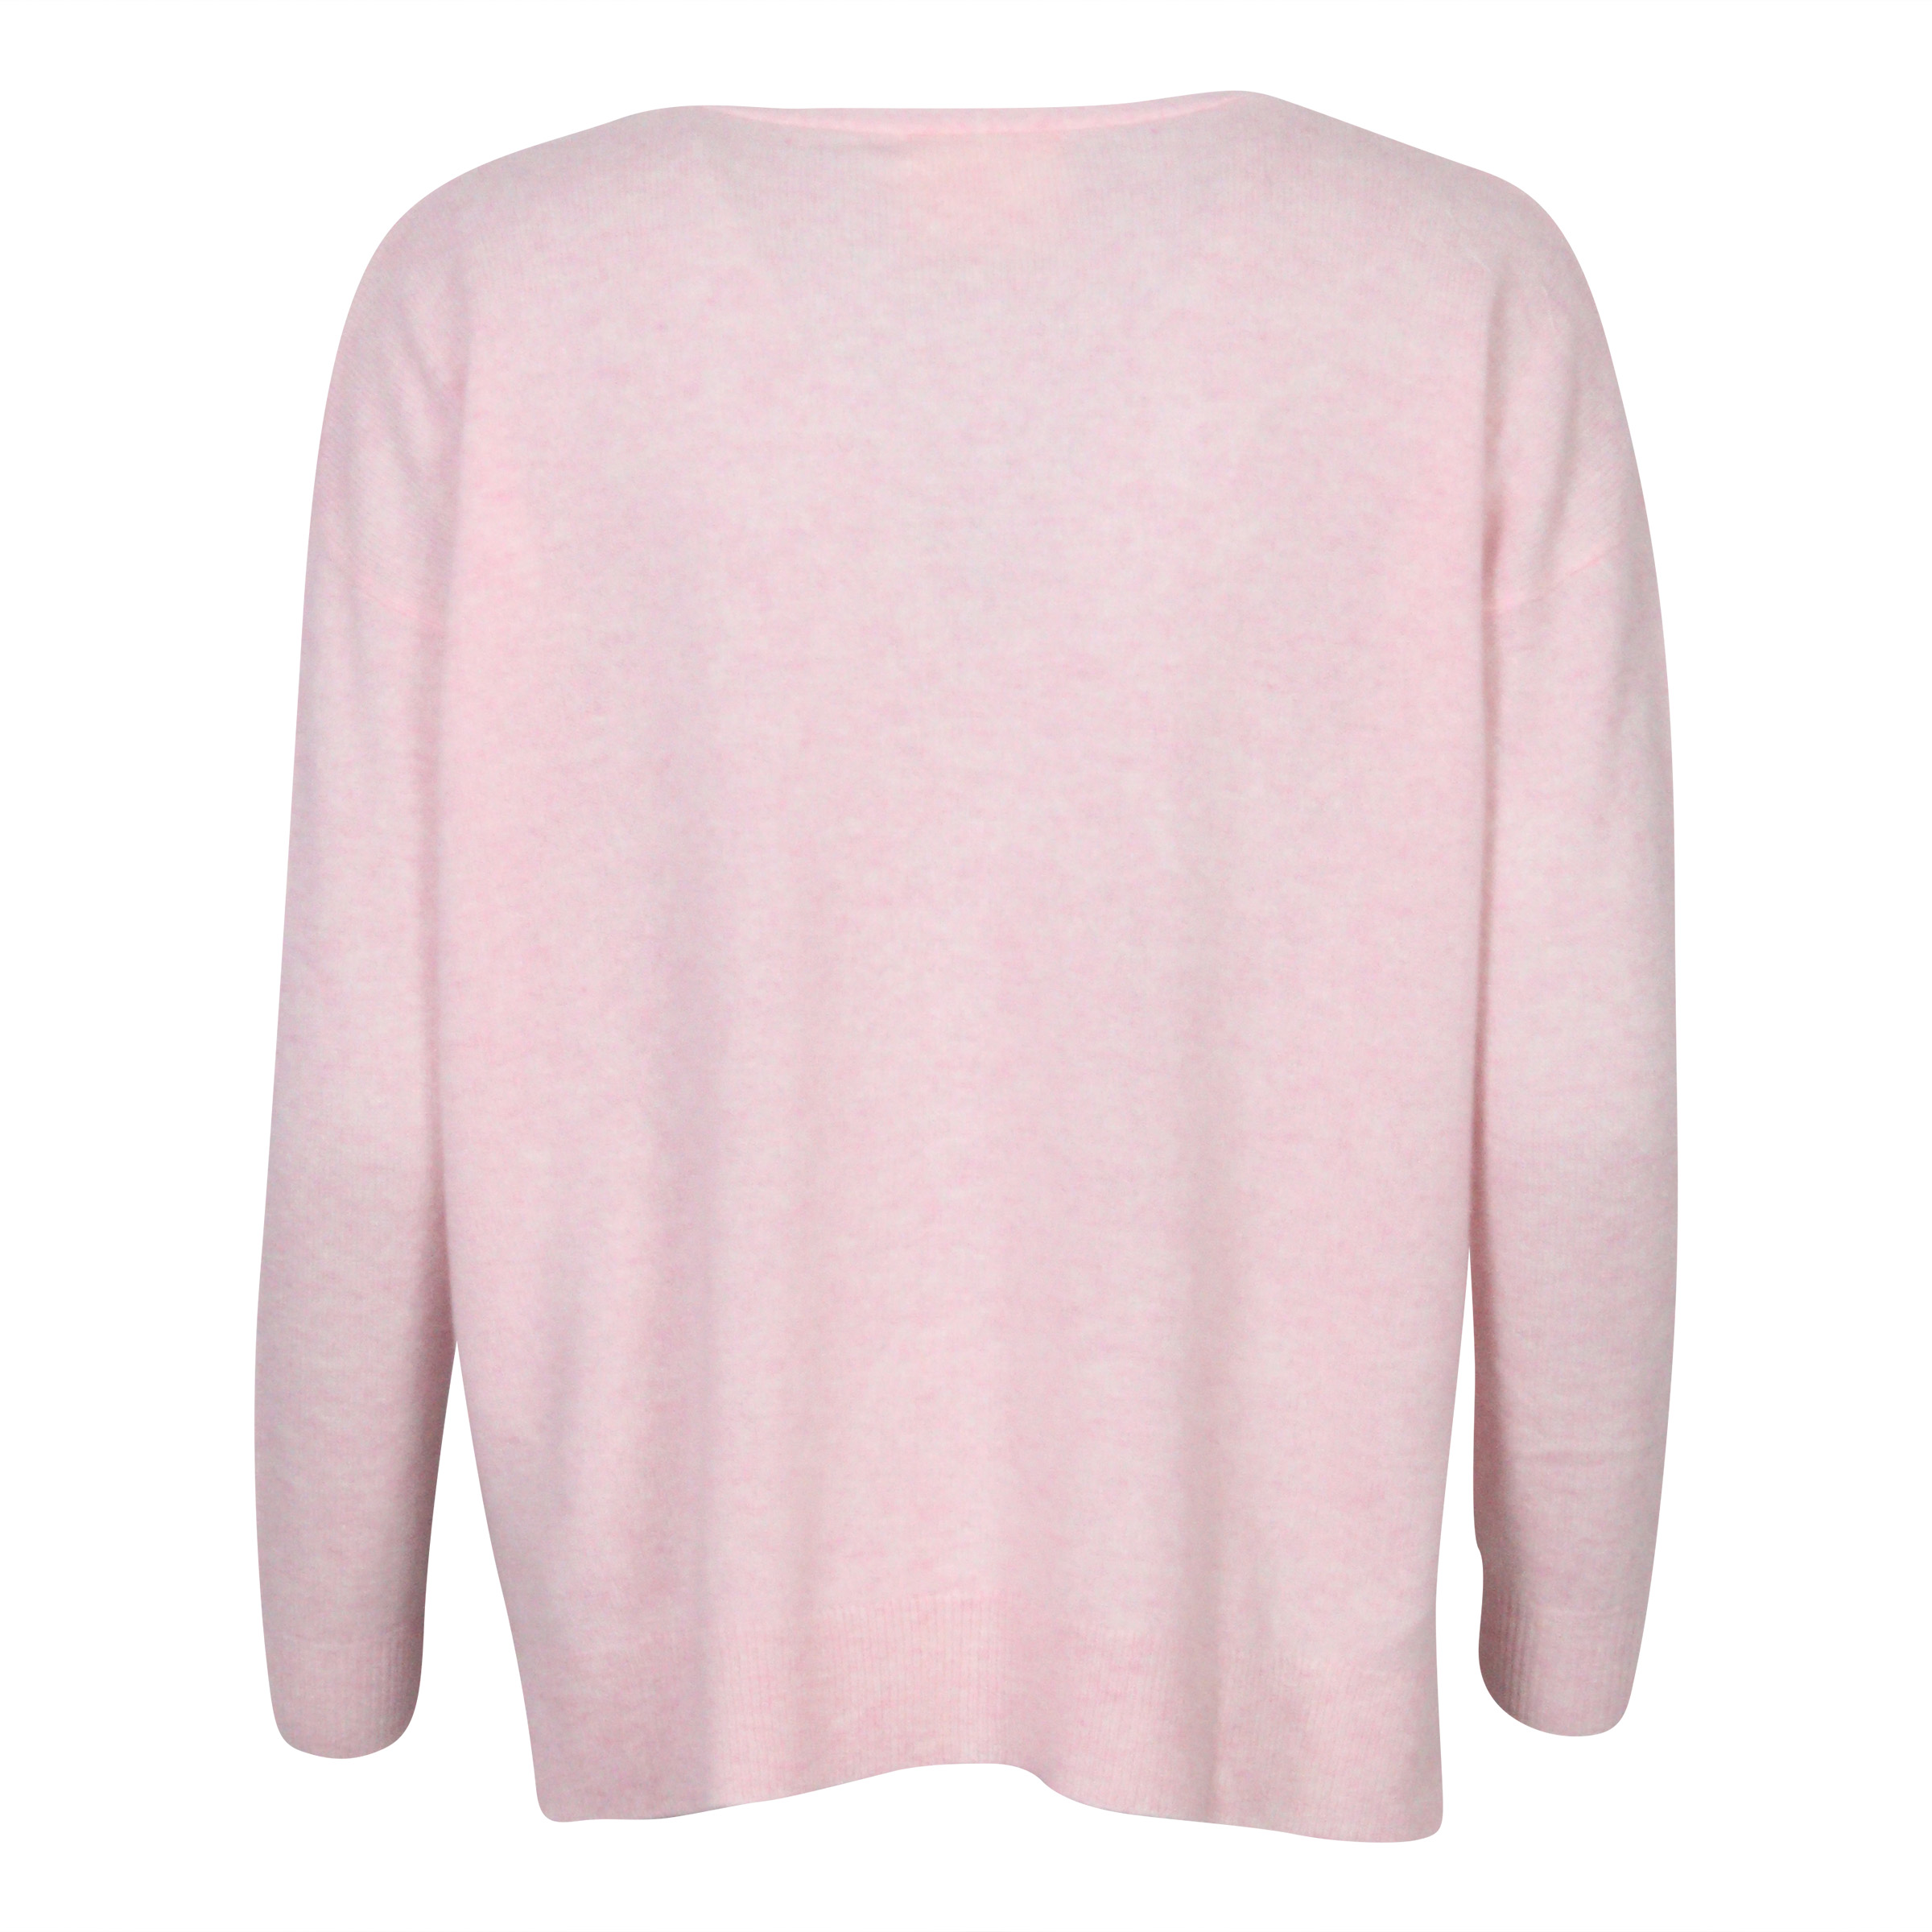 Absolut Cashmere Oversized Cardigan Light Pink Melange